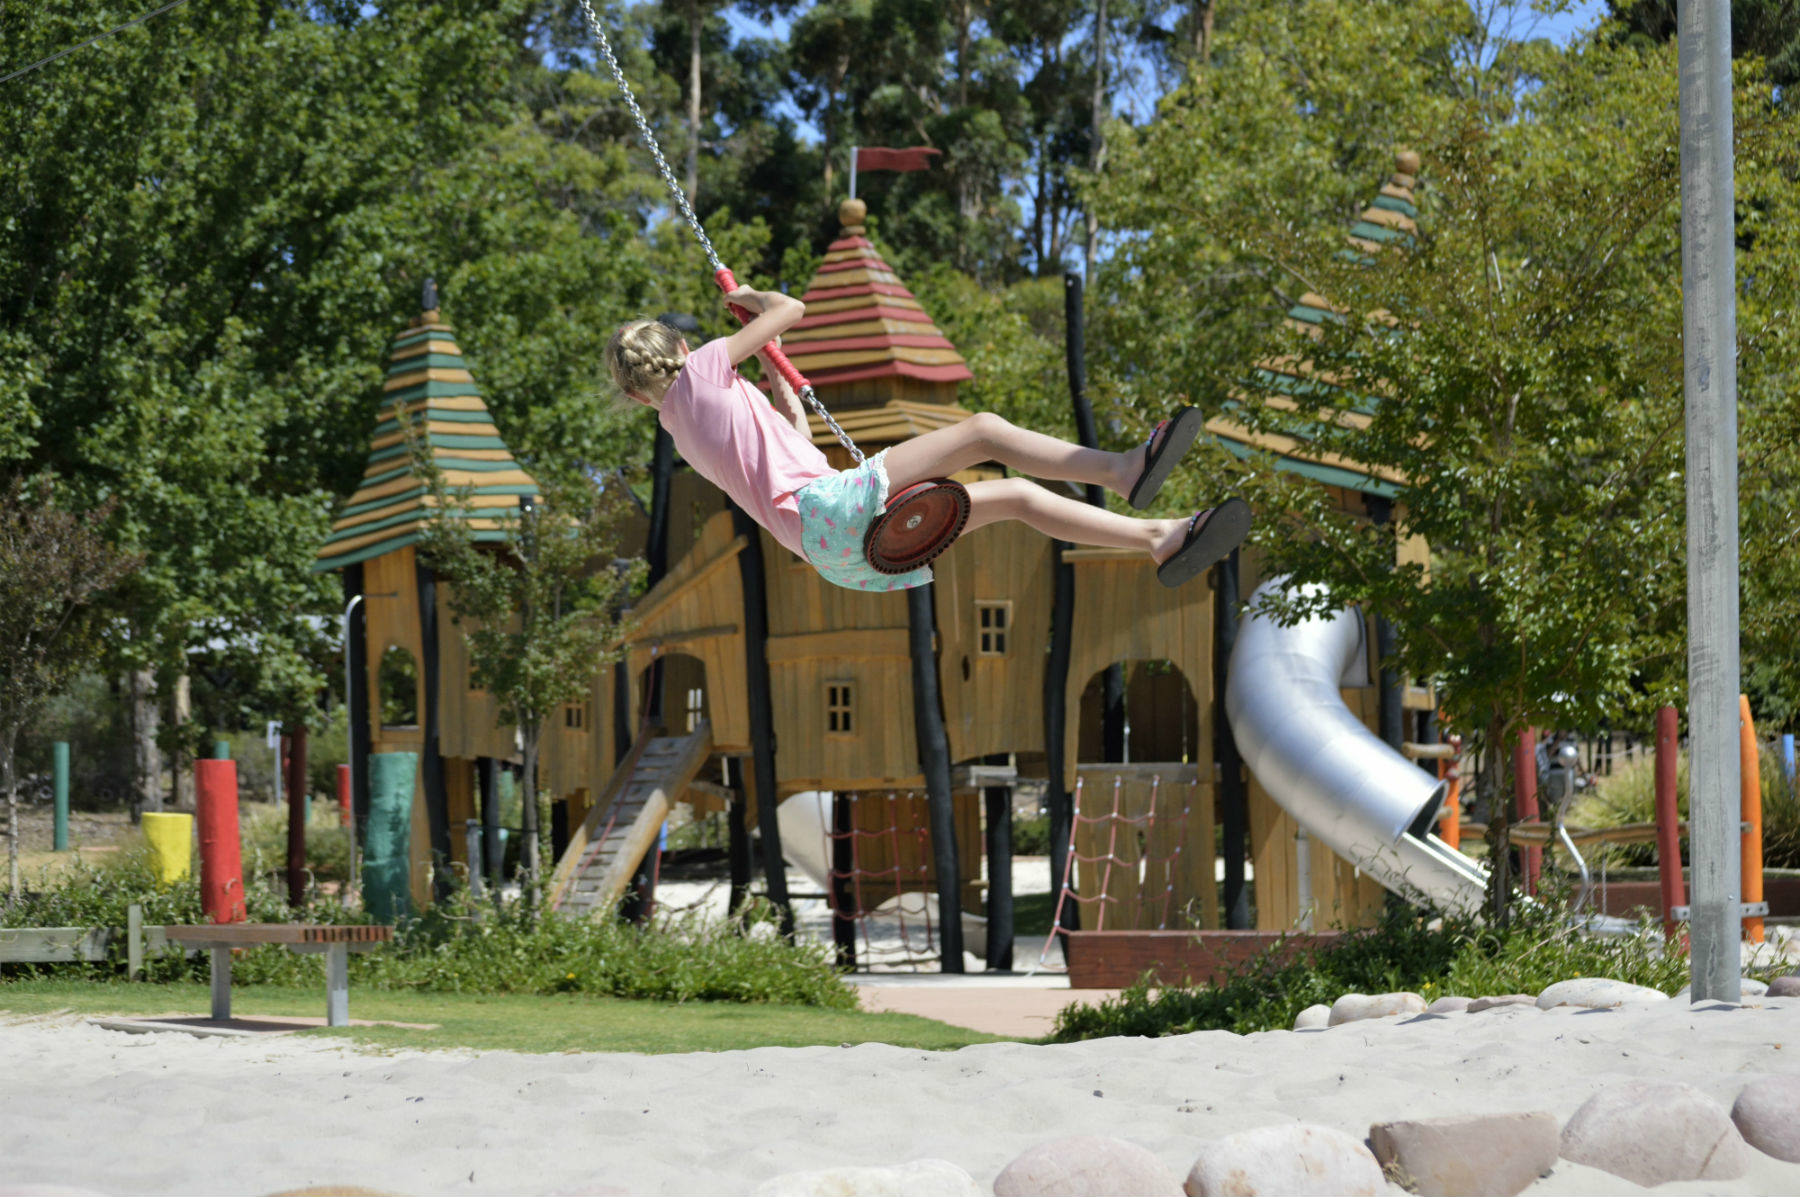 Manjimup playground is fun for kids